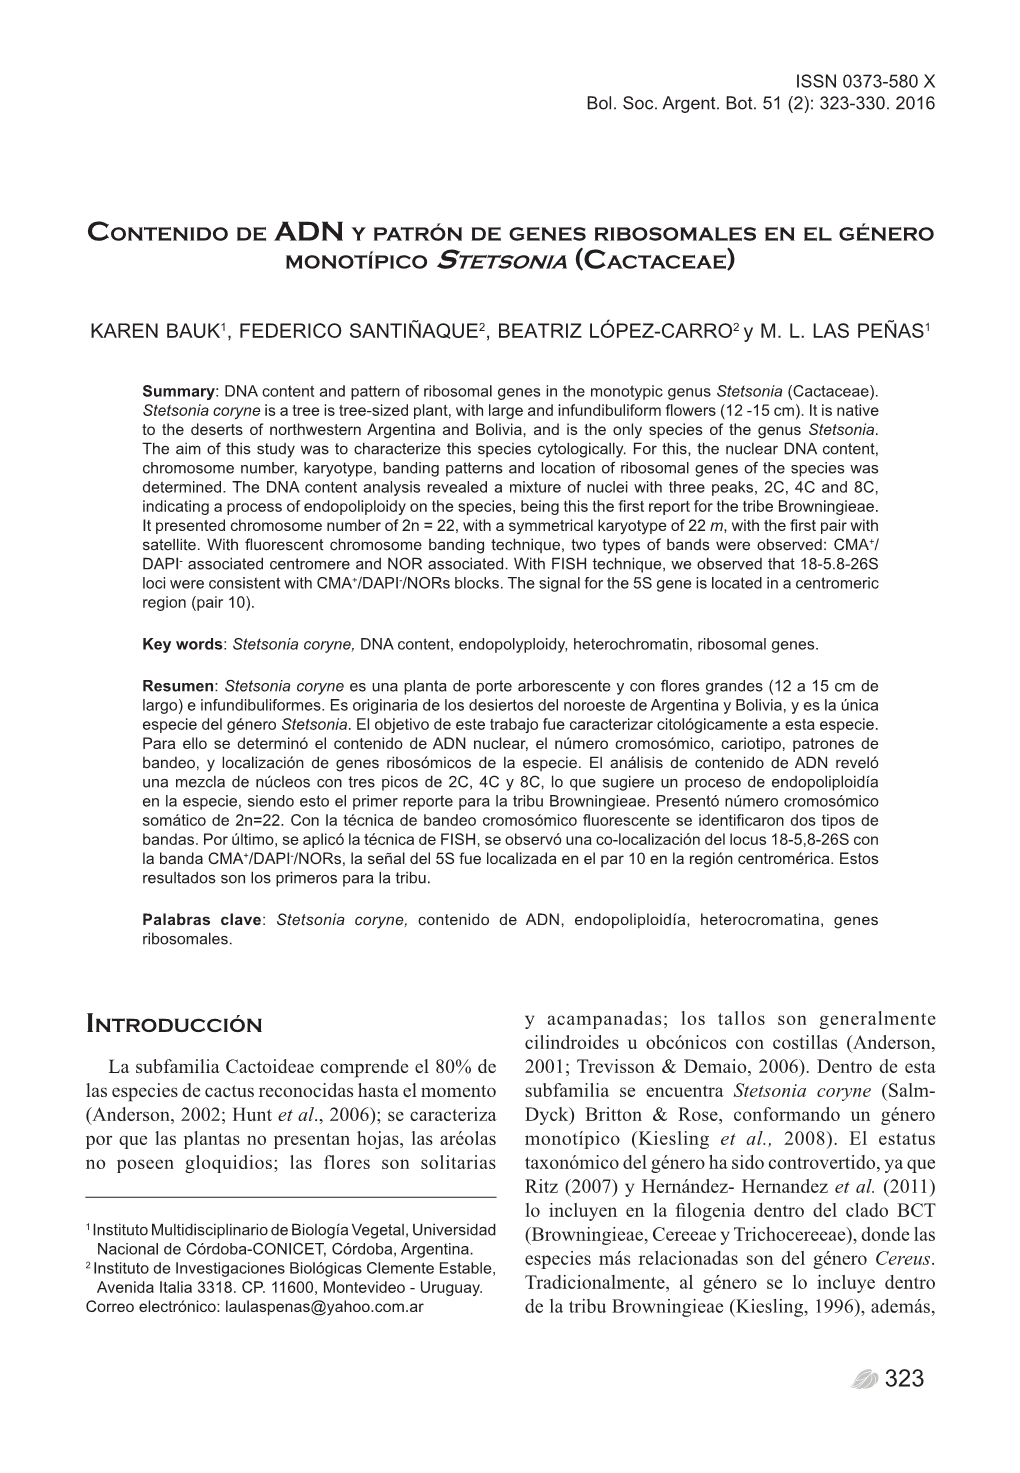 ADN Y Patrón De Genes Ribosomales En El Género Monotípico Stetsonia (Cactaceae)